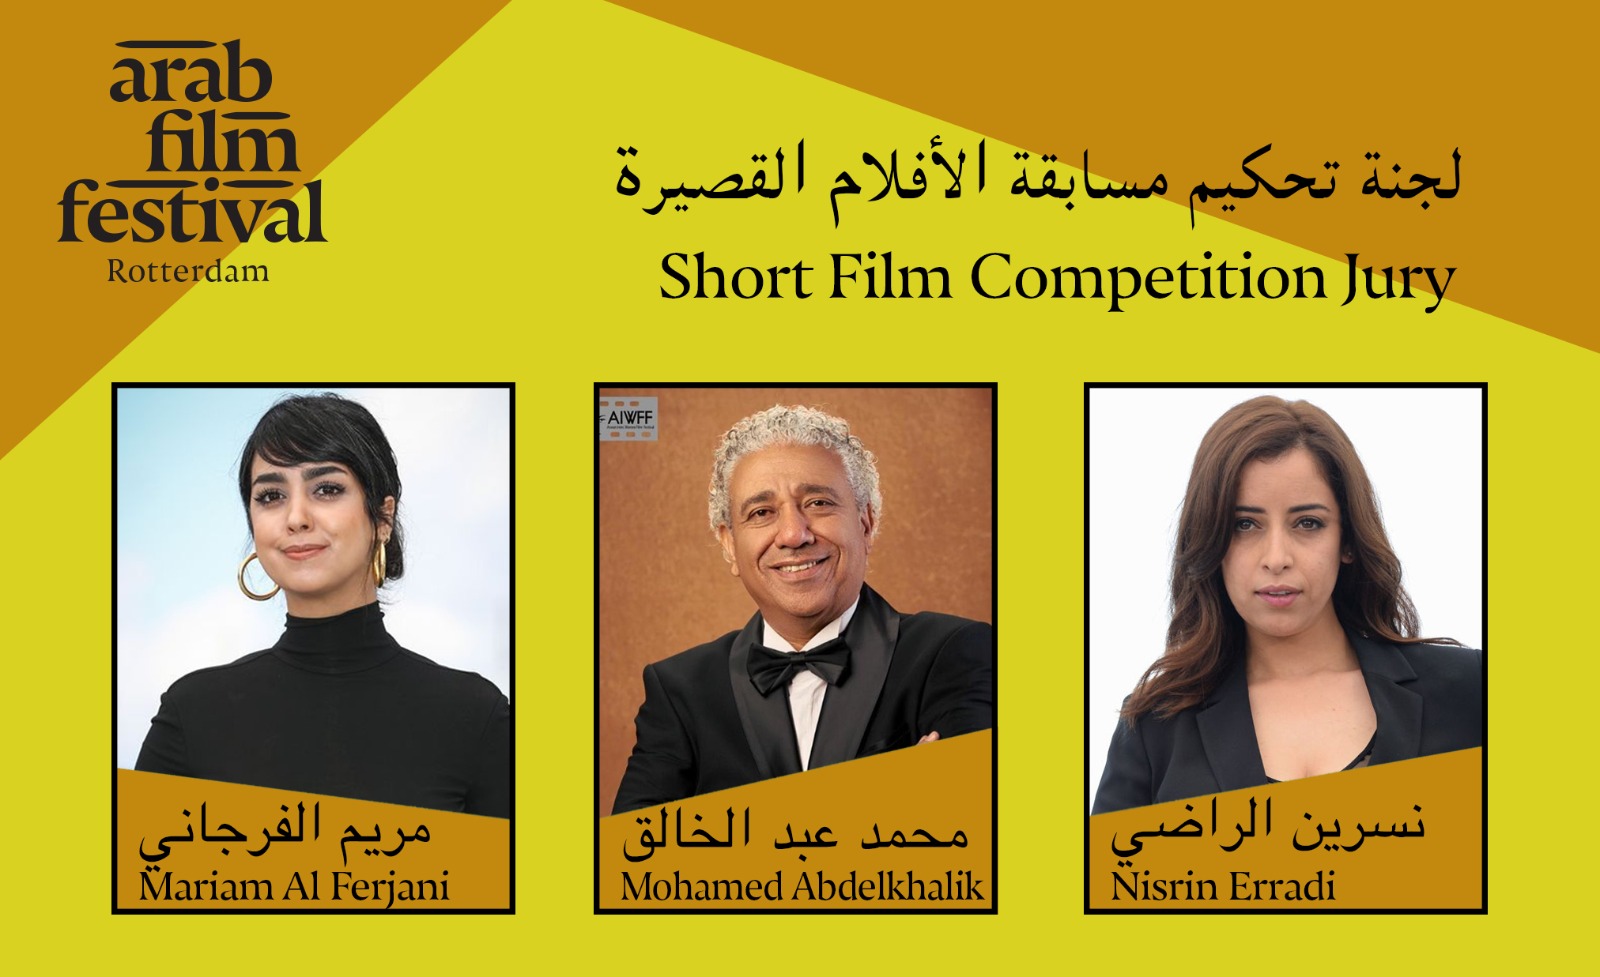 أويما 20 - Uima20 | مهرجان روتردام للفيلم العربي يكشف أفلام ولجان تحكيم دورته الـ 23